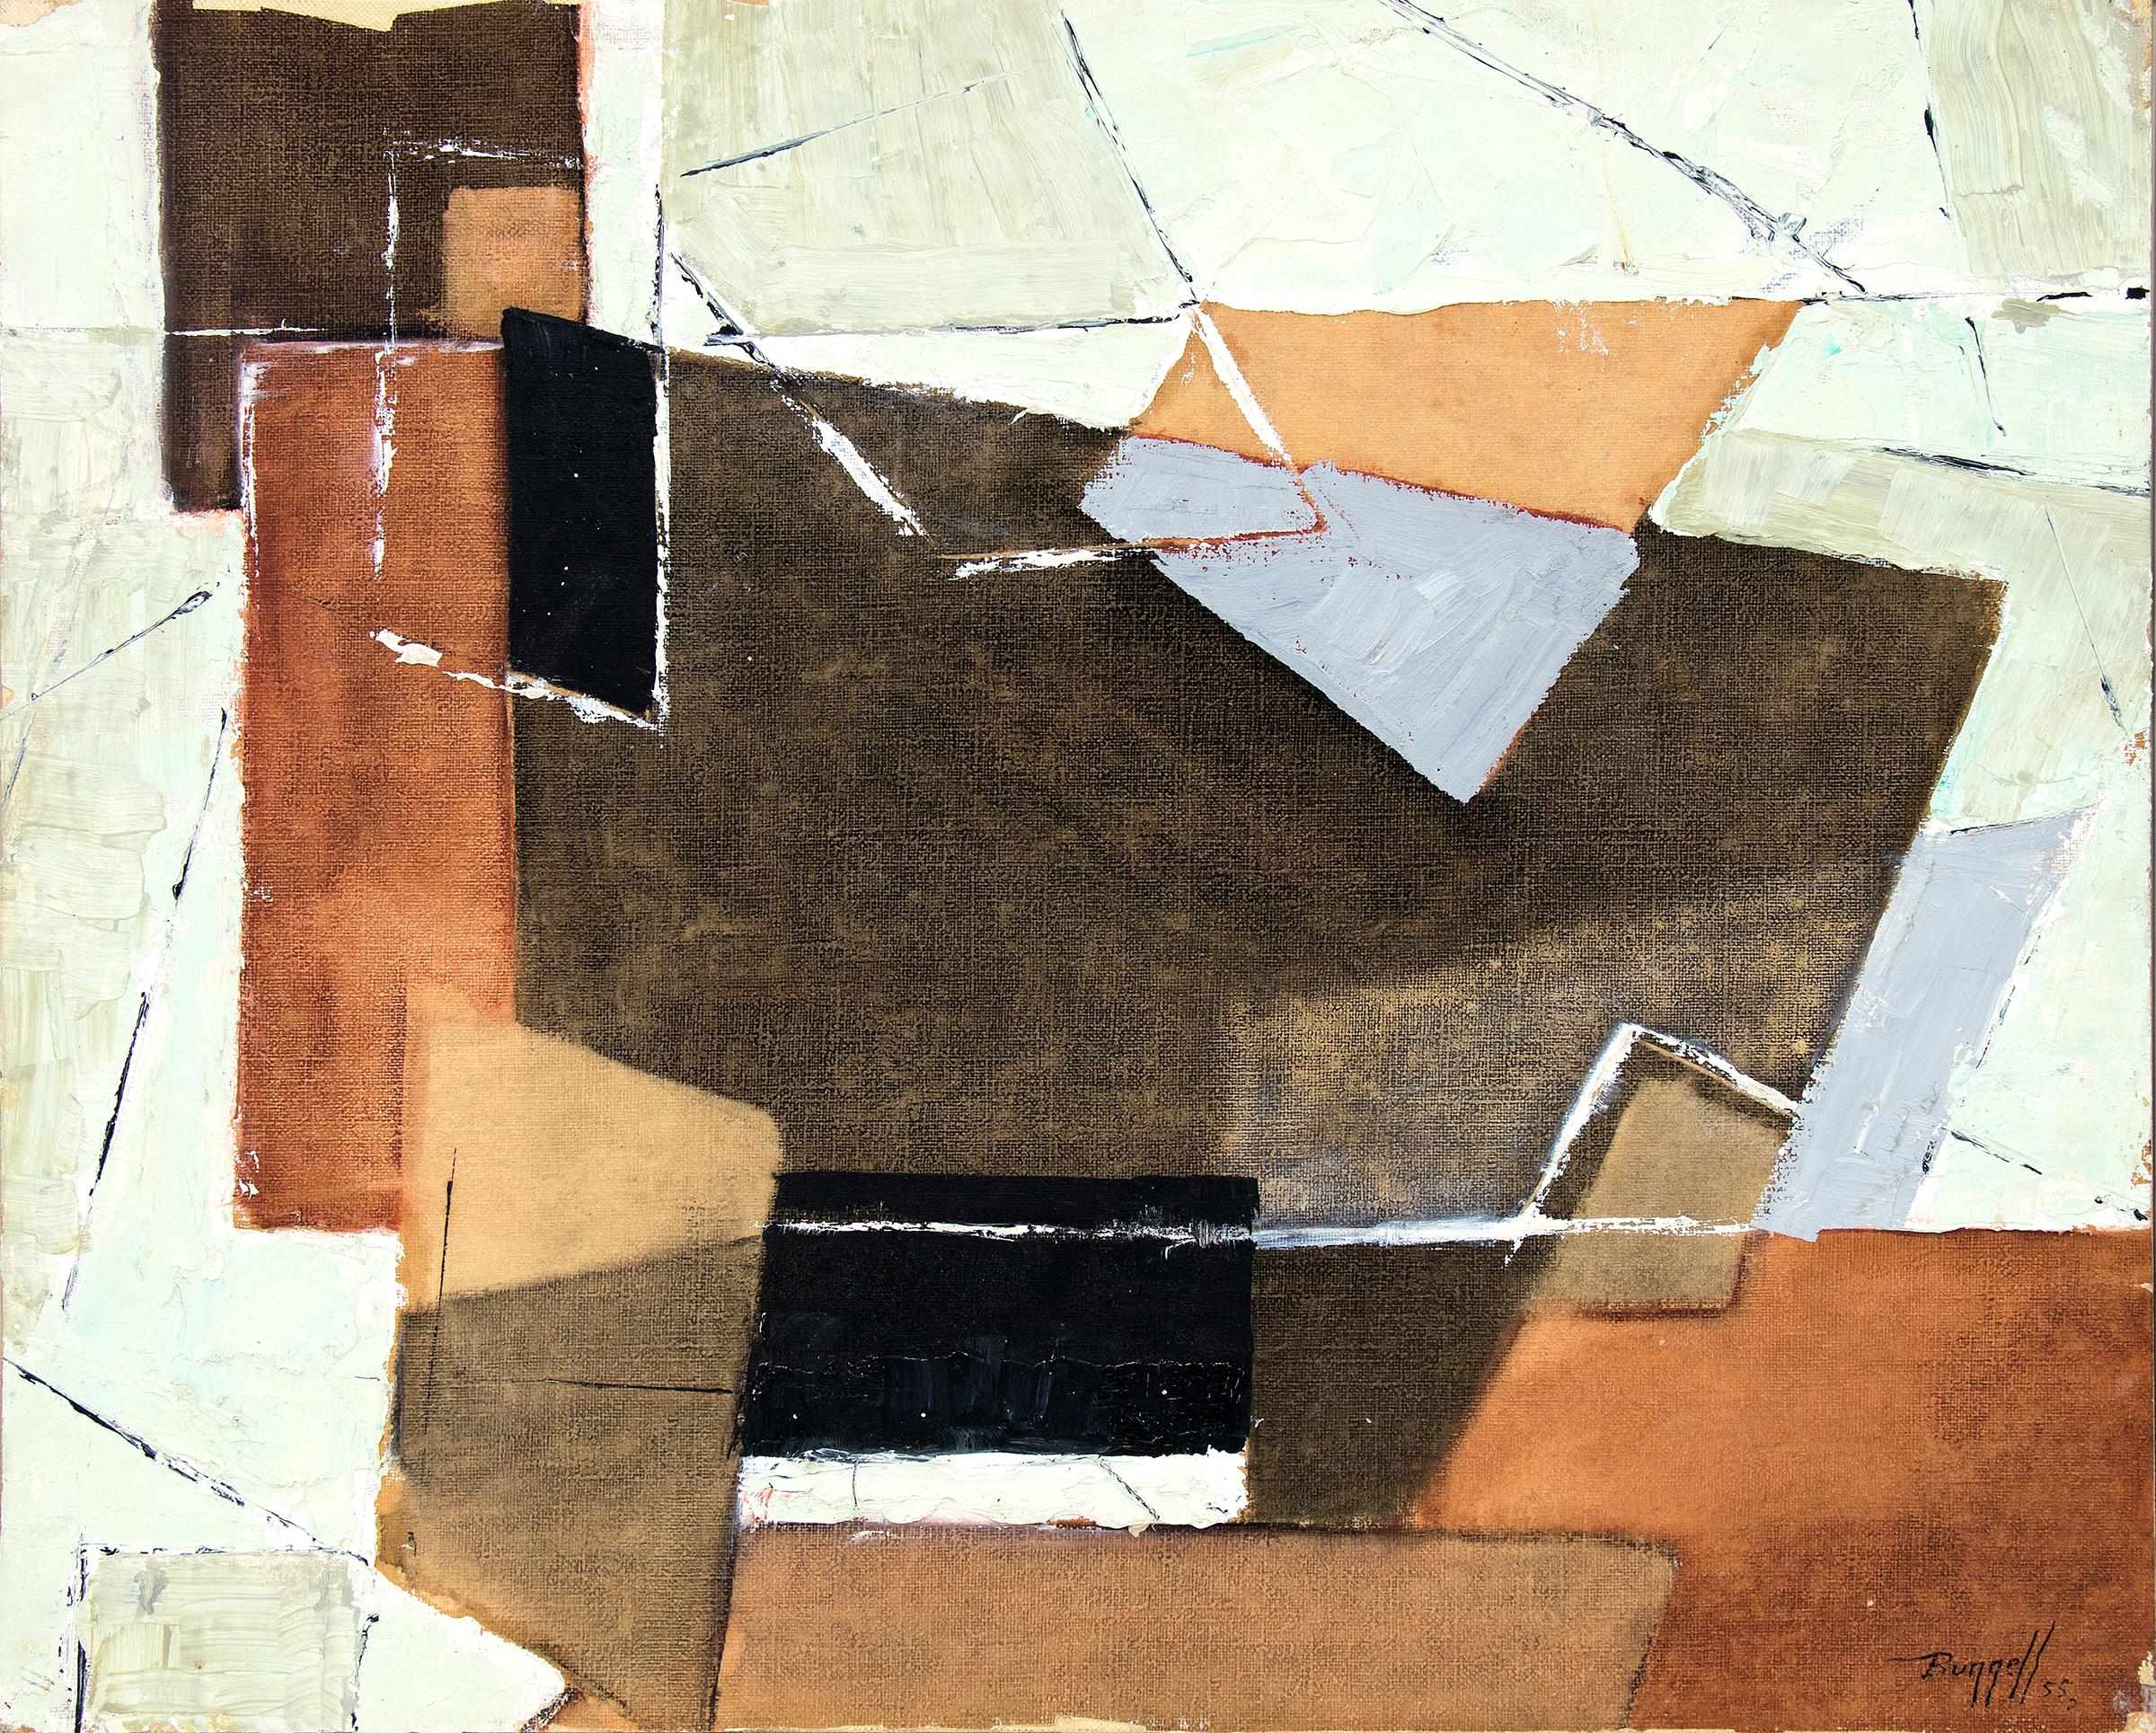 Abstrakt-expressionistisches Ölgemälde aus den 1950er Jahren, Blau, Braun, Orange, Salbeigrün (Abstrakter Expressionismus), Painting, von Charles Ragland Bunnell